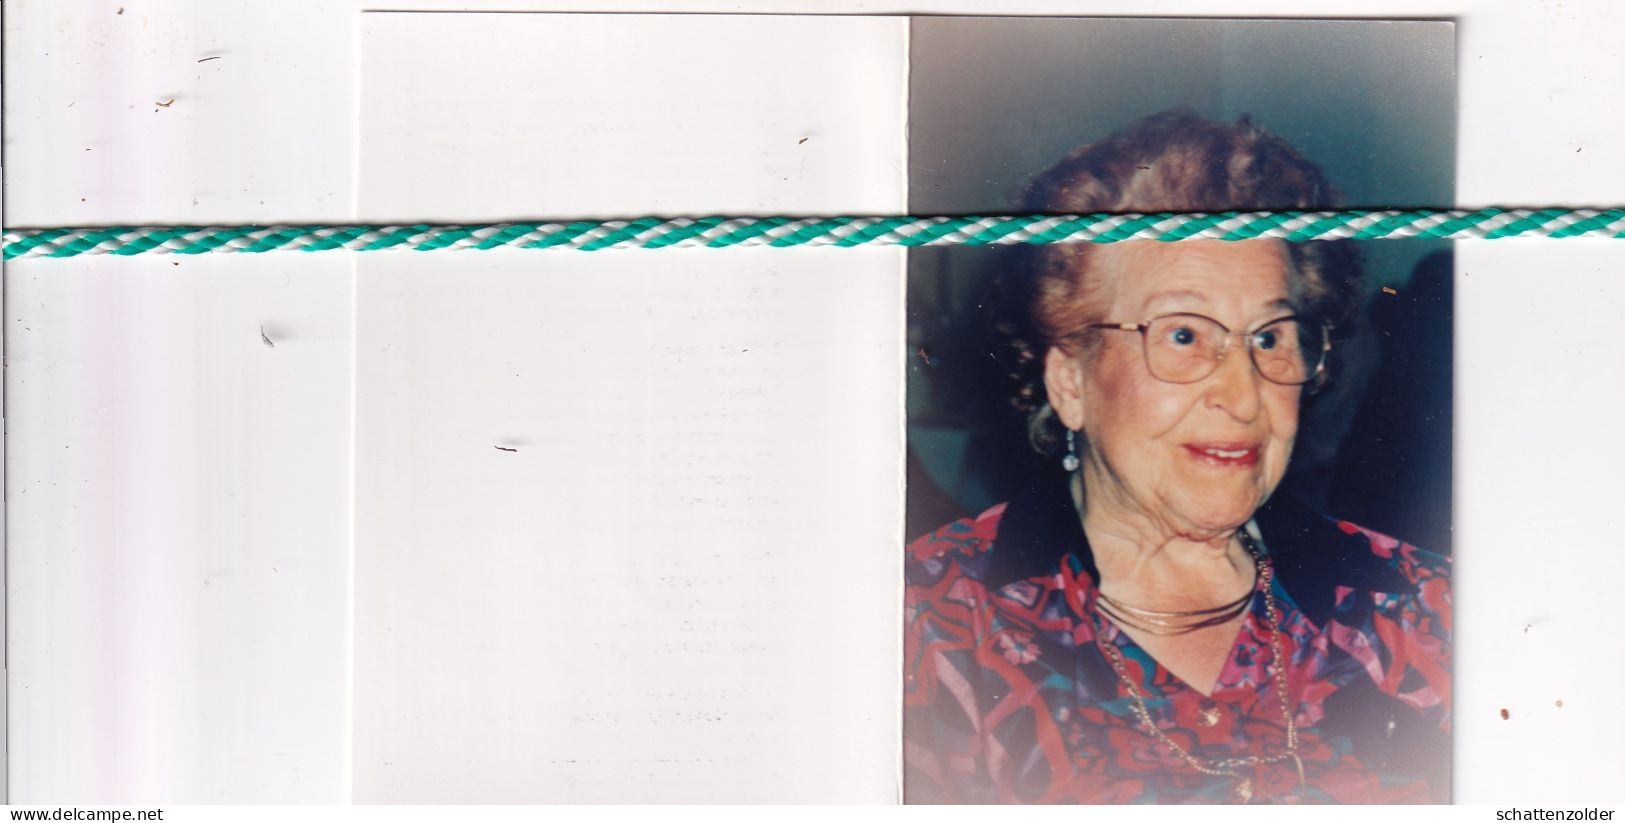 Bertha Van Acker-Van Kerckhove, Zele 1907, Sint-Niklaas 1995. Foto - Obituary Notices